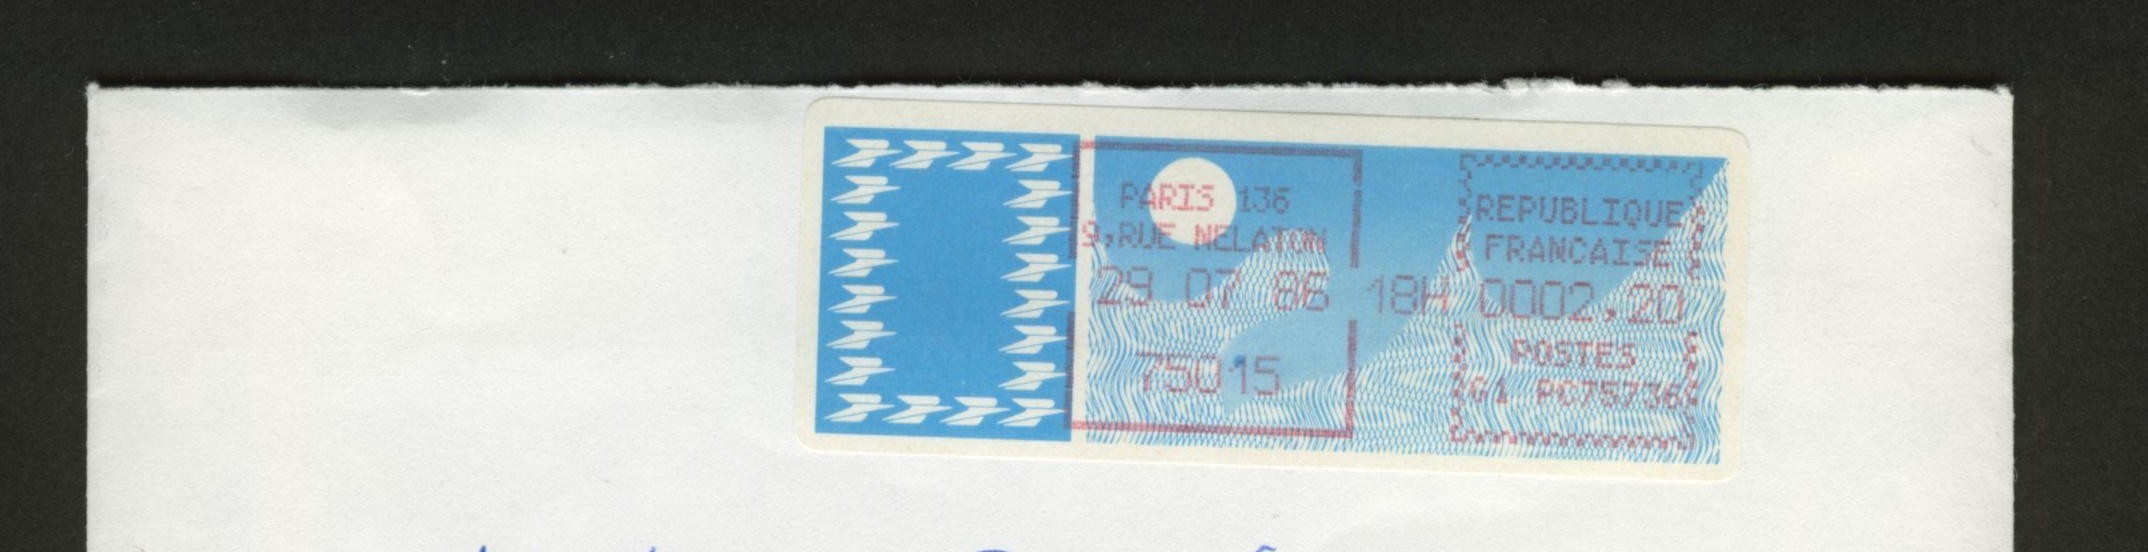 VIGNETTE à 2.20 F  Sur Enveloppe Entière - PARIS 136 75015 - Type N° 95  Cote 8.50 € - 1985 « Carrier » Papier